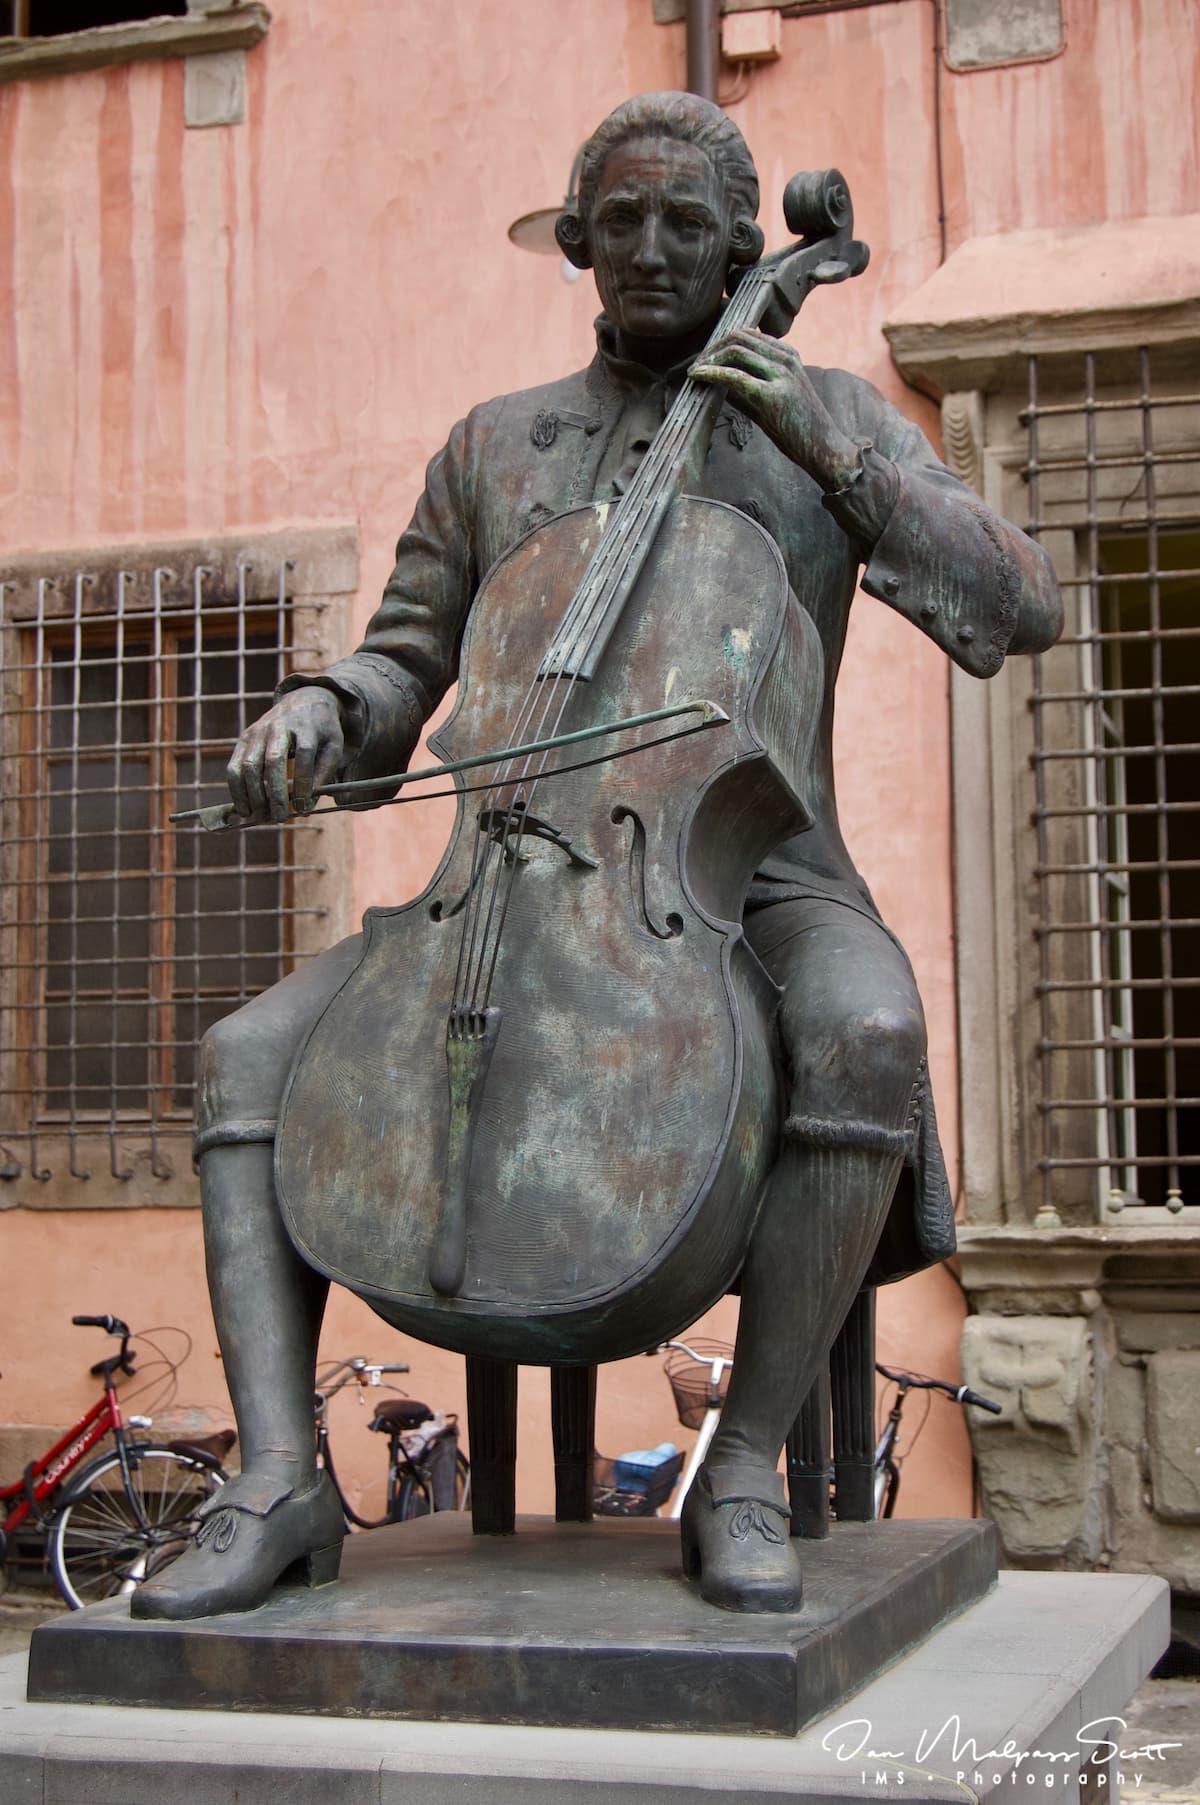 Statue of Luigi Boccherini in Lucca, Italy